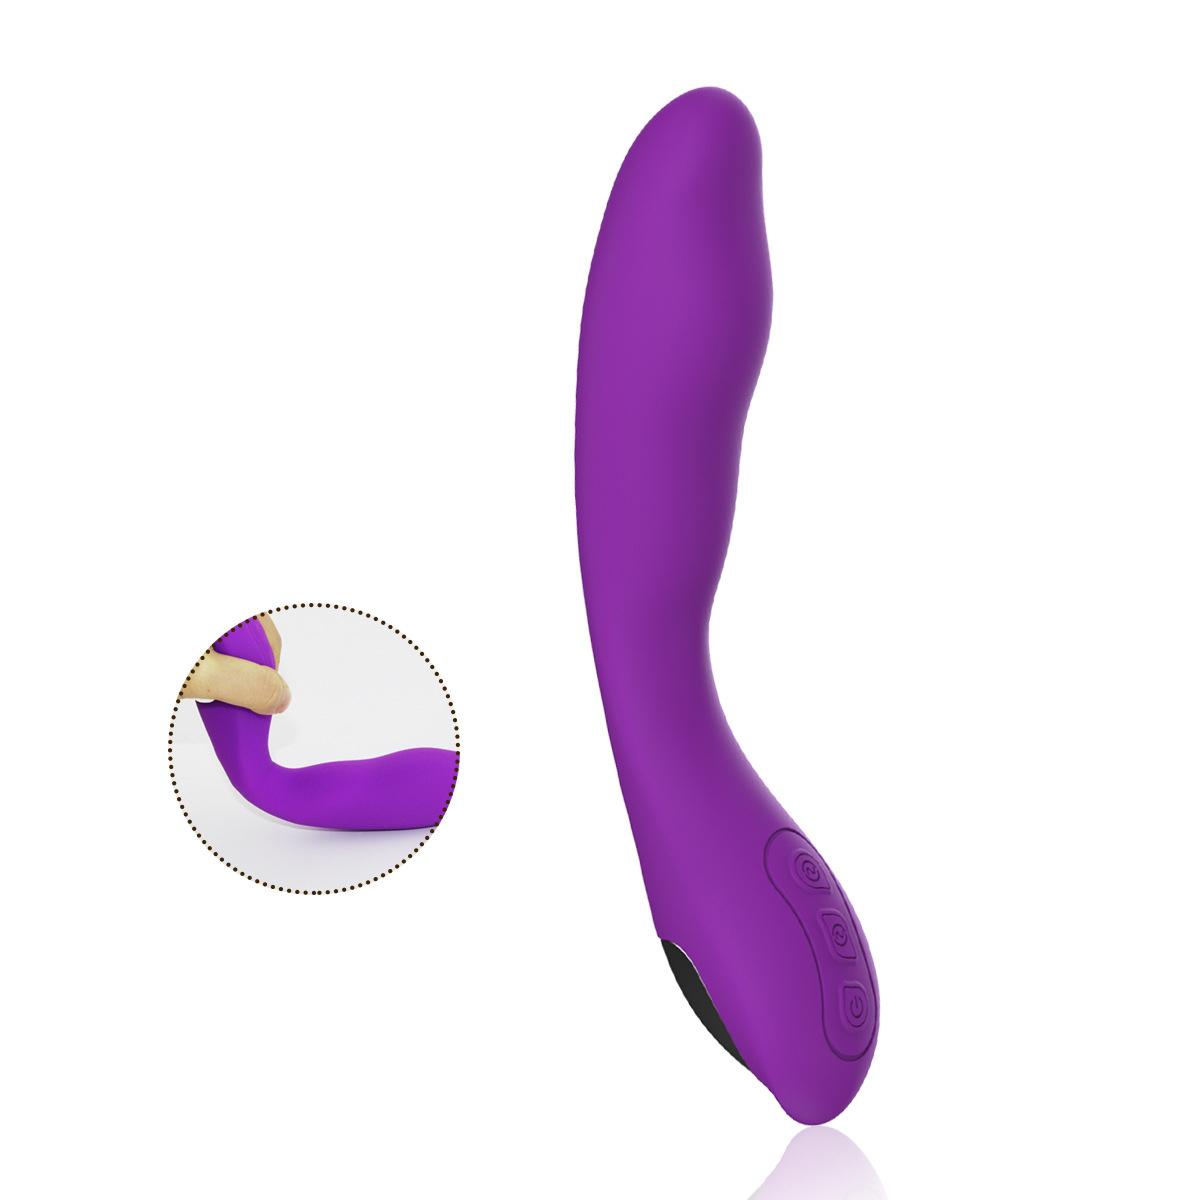 Über USB wiederaufladbares G-Topf-Masturbationsspielzeug für Frauen, das massiert